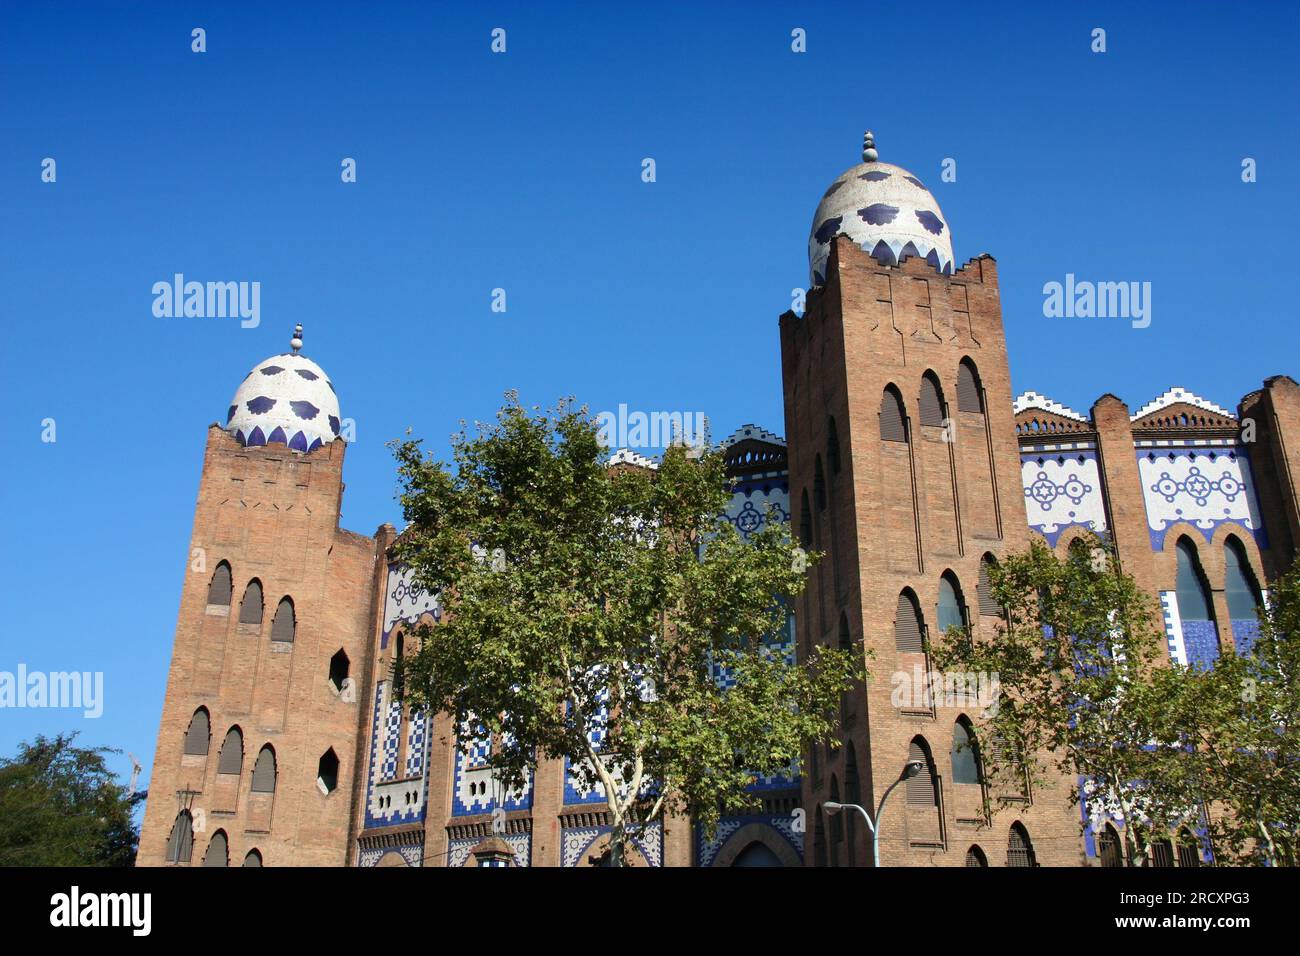 La Monumental bullring architecture in Barcelona, Spain. Bull ring arena. Stock Photo